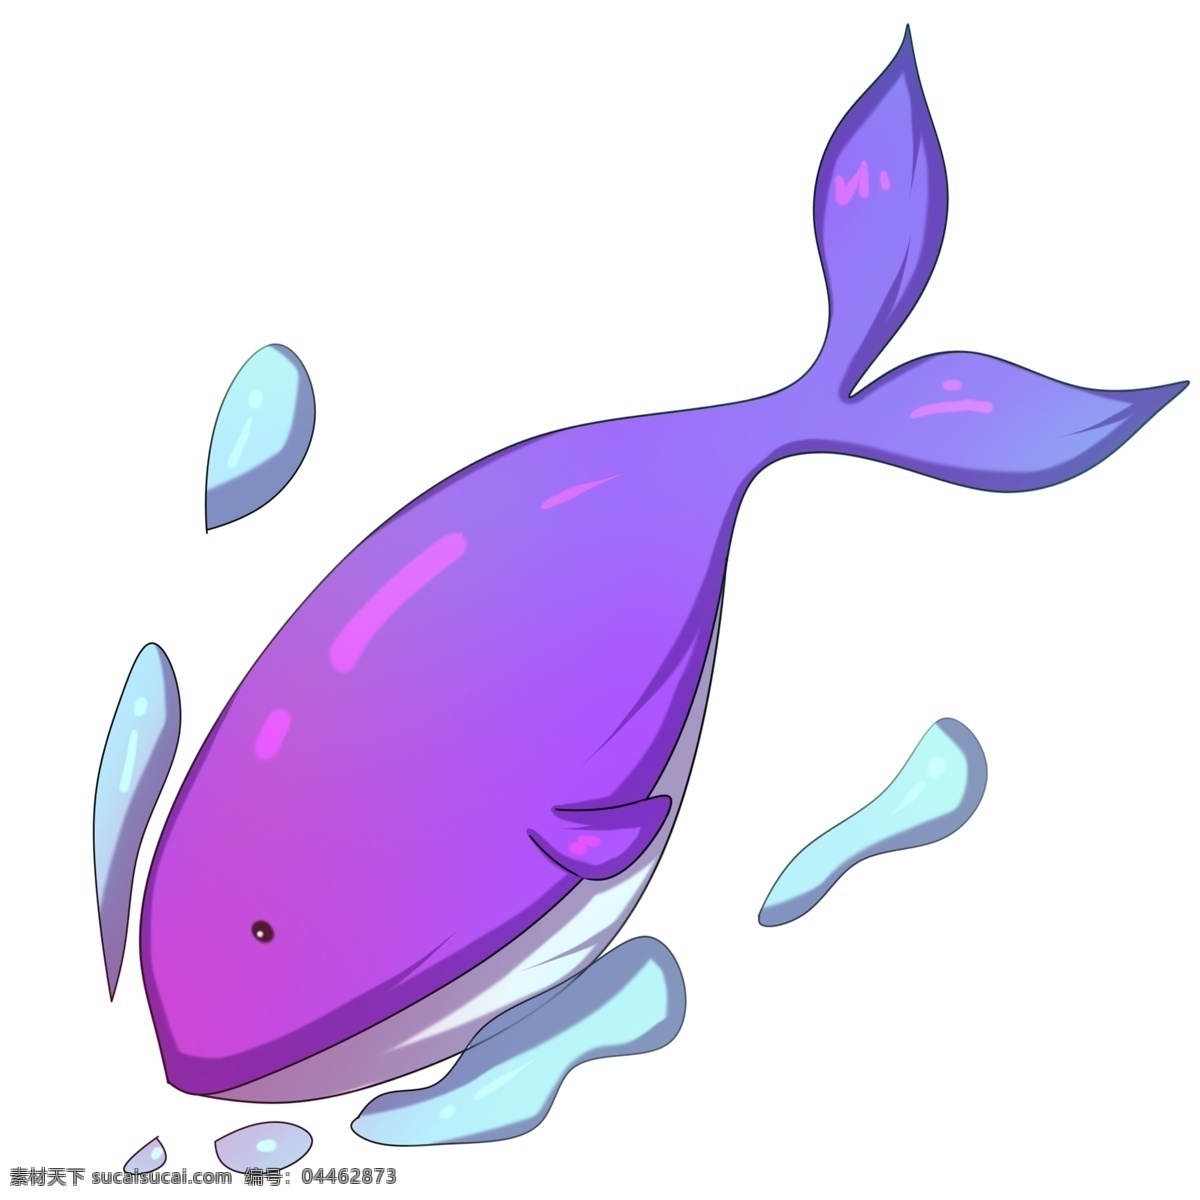 卡通 手绘 可爱 鲸鱼 遨游 插画 巨鲸 鲸目 海洋 大海 海水 海浪 哺乳动物 游泳 喷水 玩耍 巨大 圆鼓鼓